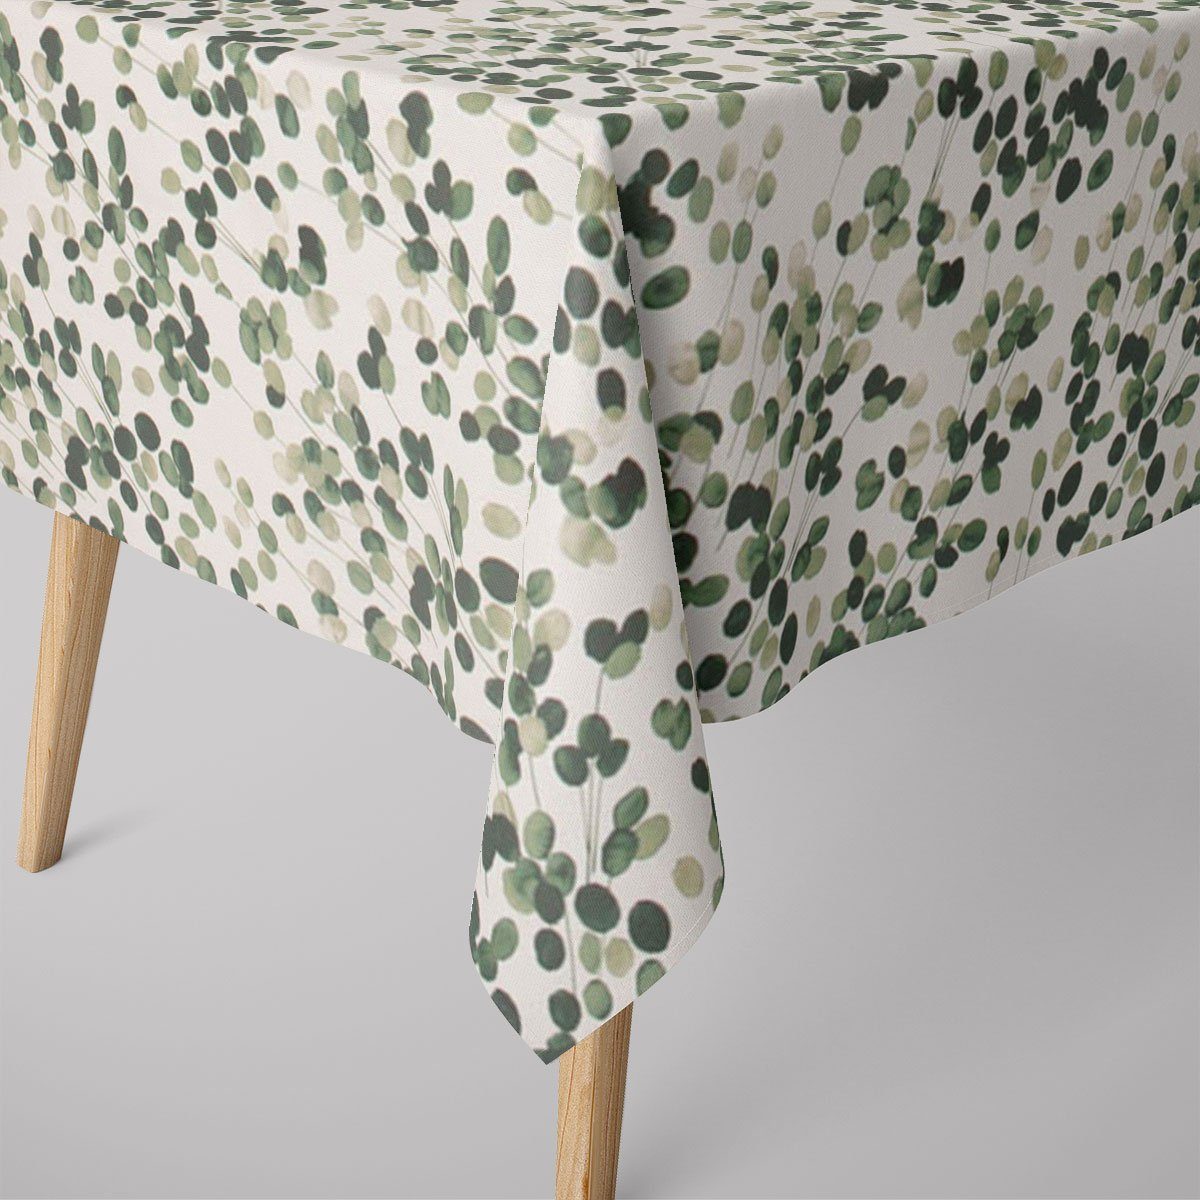 SCHÖNER LEBEN. Tischdecke SCHÖNER LEBEN. Tischdecke Digitaldruck Blätter wollweiß grün, handmade | Tischdecken